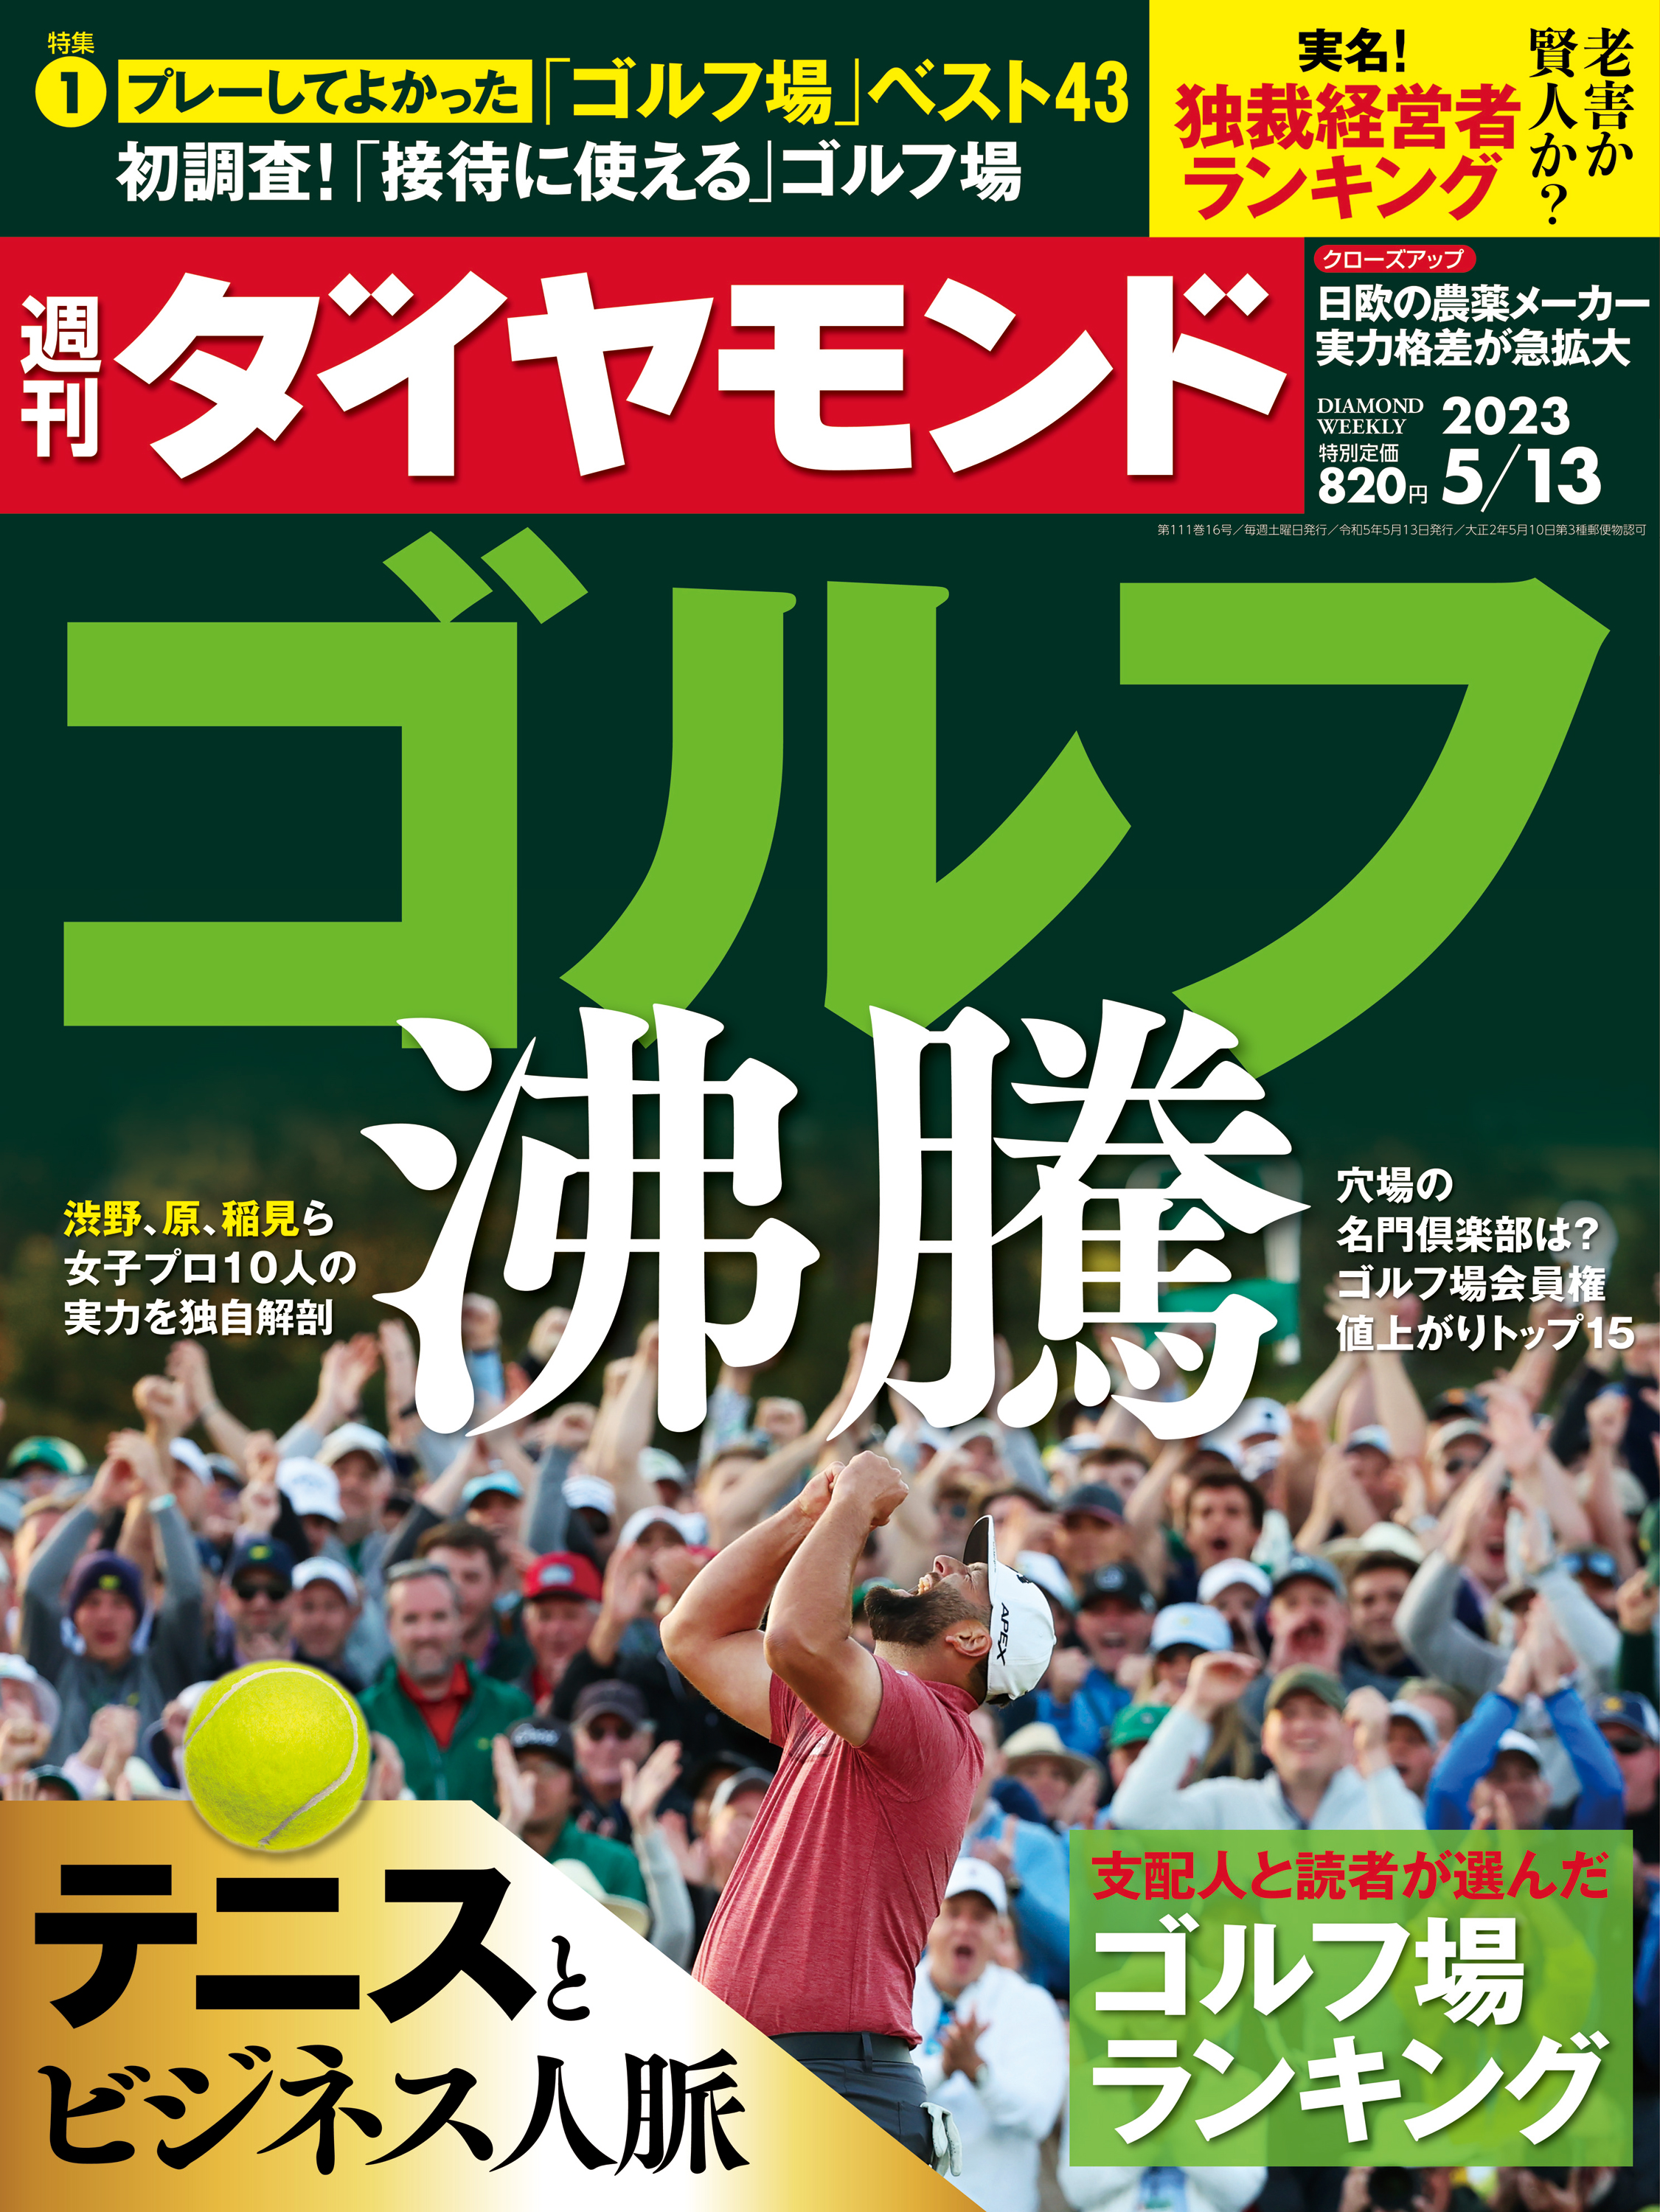 ゴルフ沸騰(週刊ダイヤモンド 2023年5/13号) - ダイヤモンド社